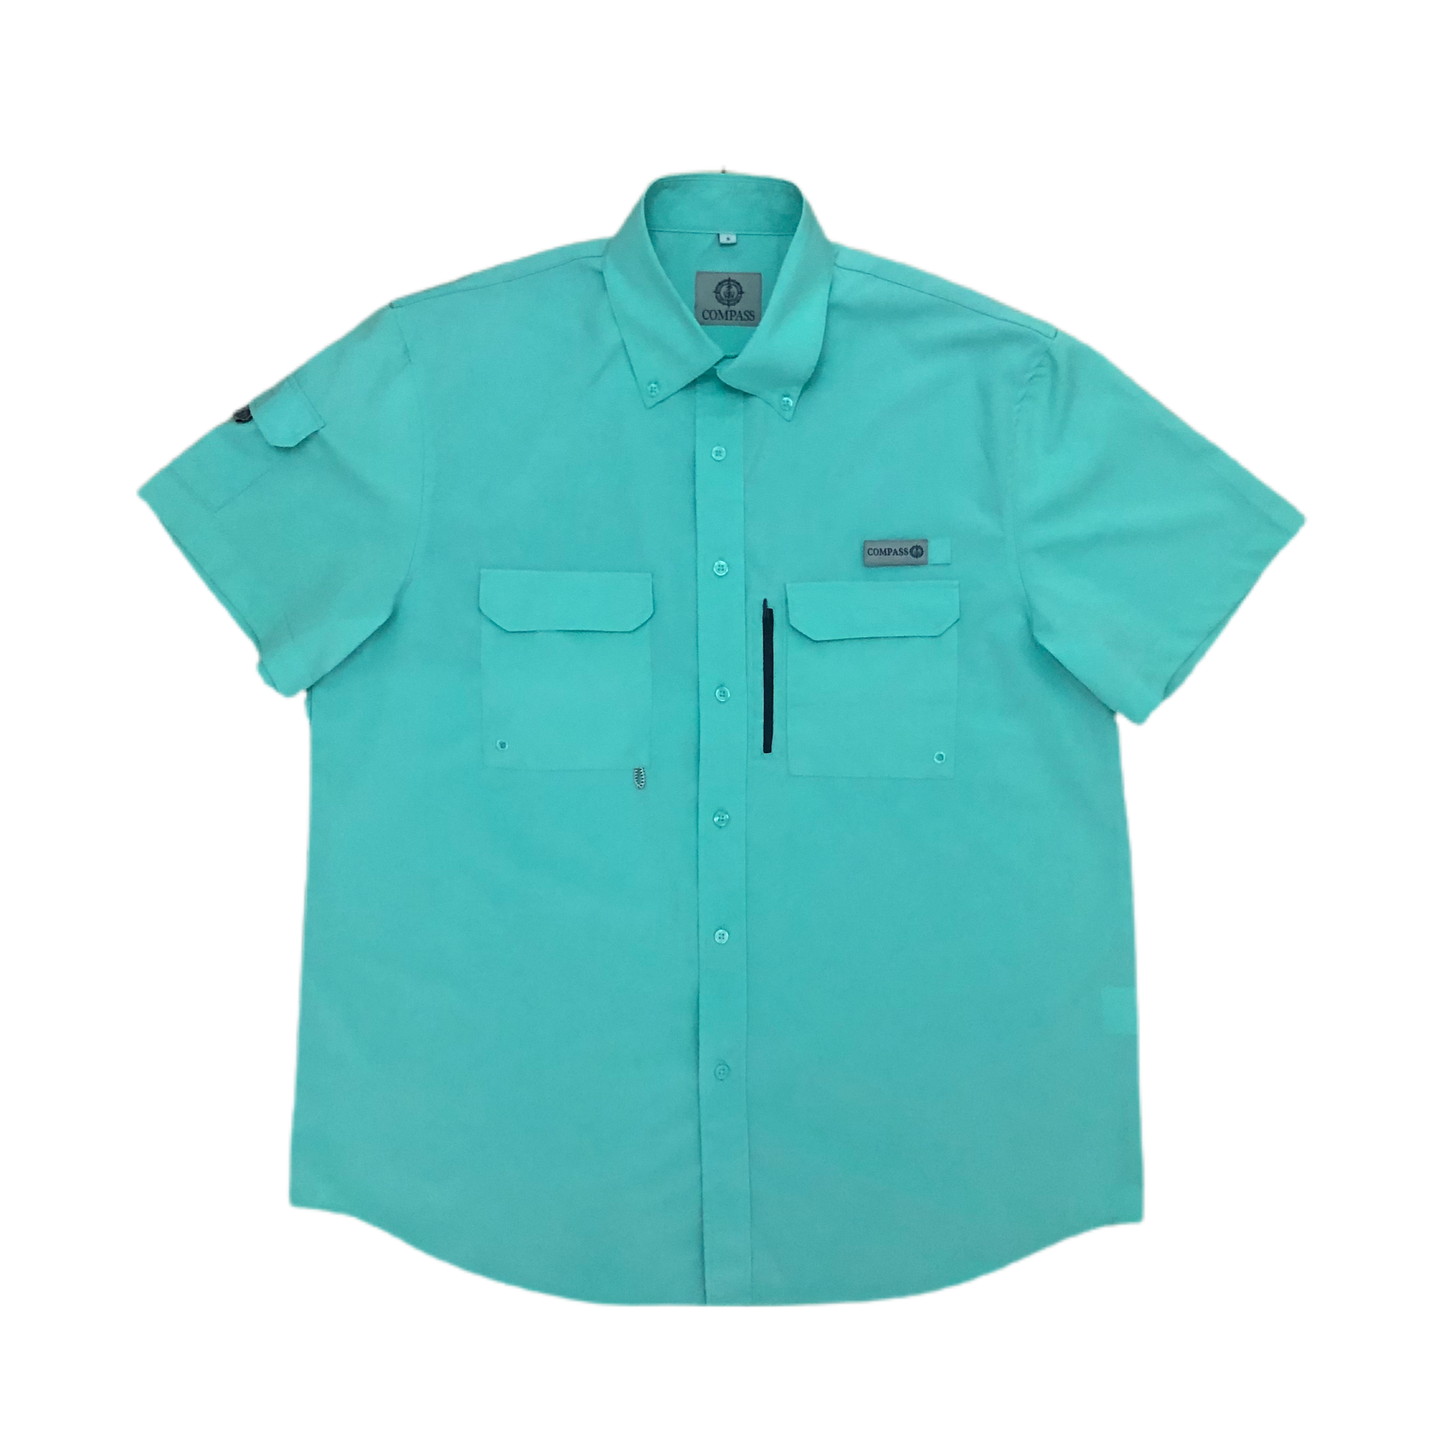 Turquoise- Men's Short Sleeve Shirt